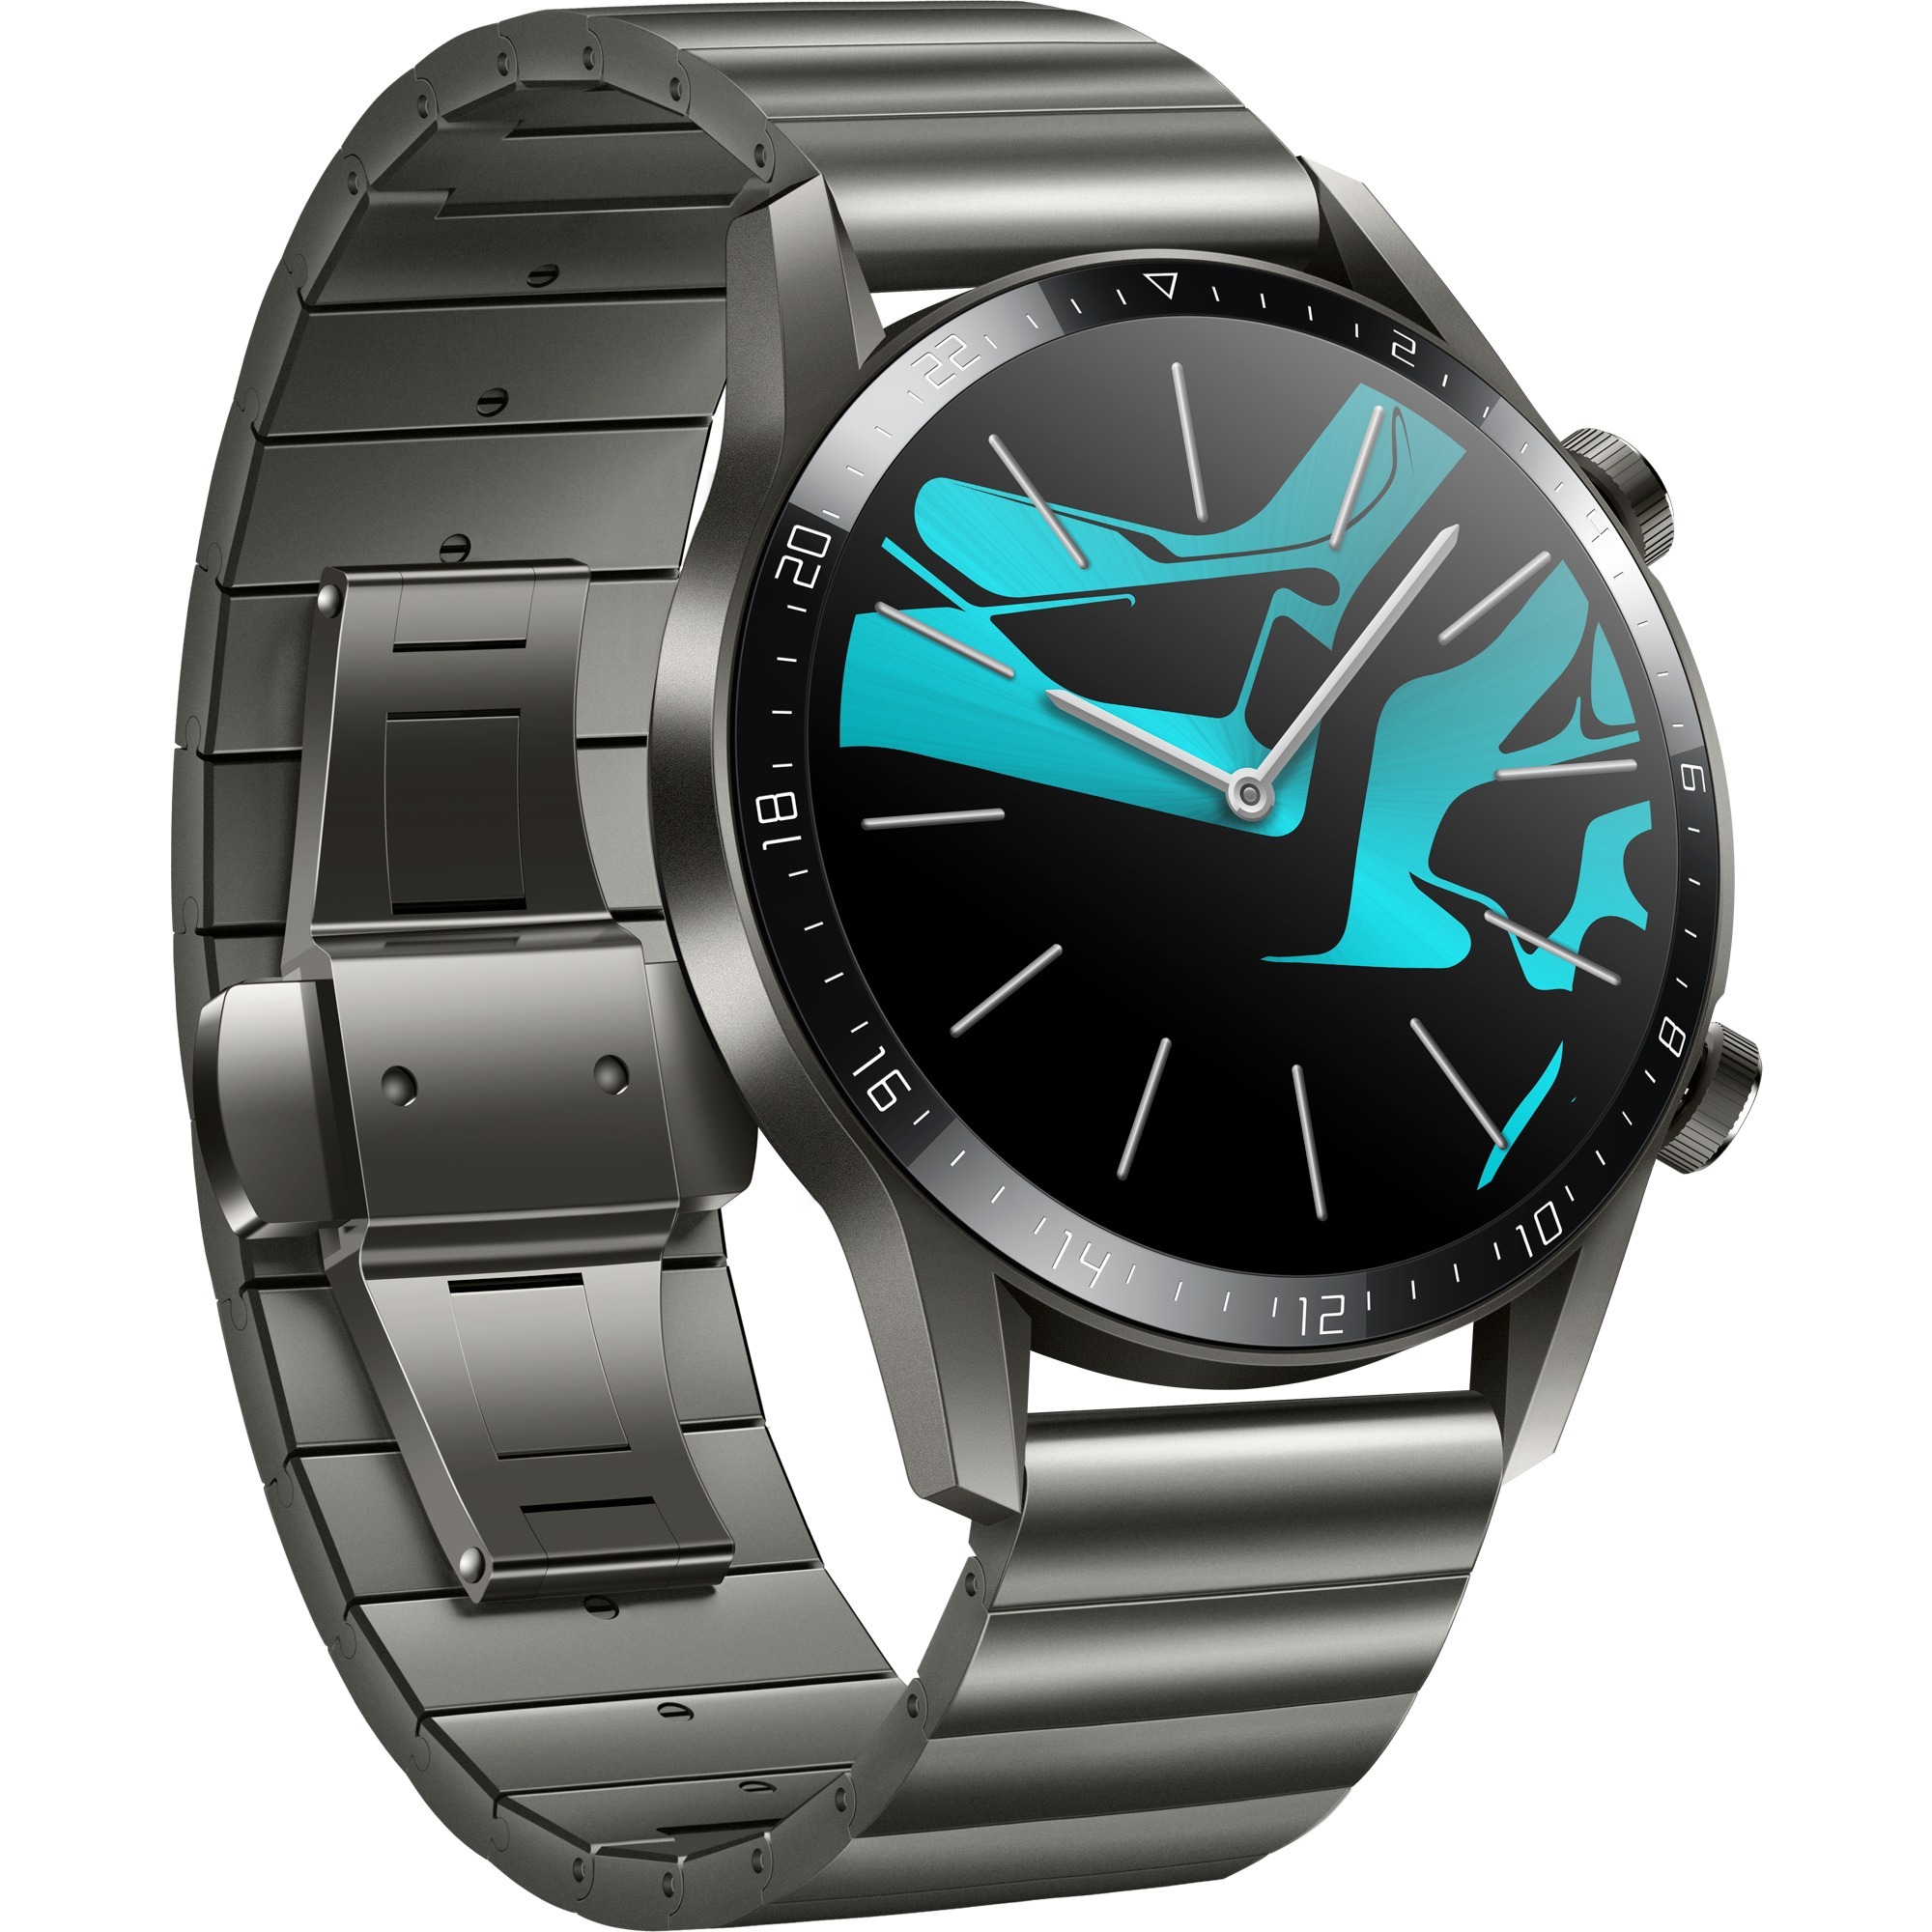 Image of Alternate - Watch GT2 46mm Elite, Smartwatch online einkaufen bei Alternate